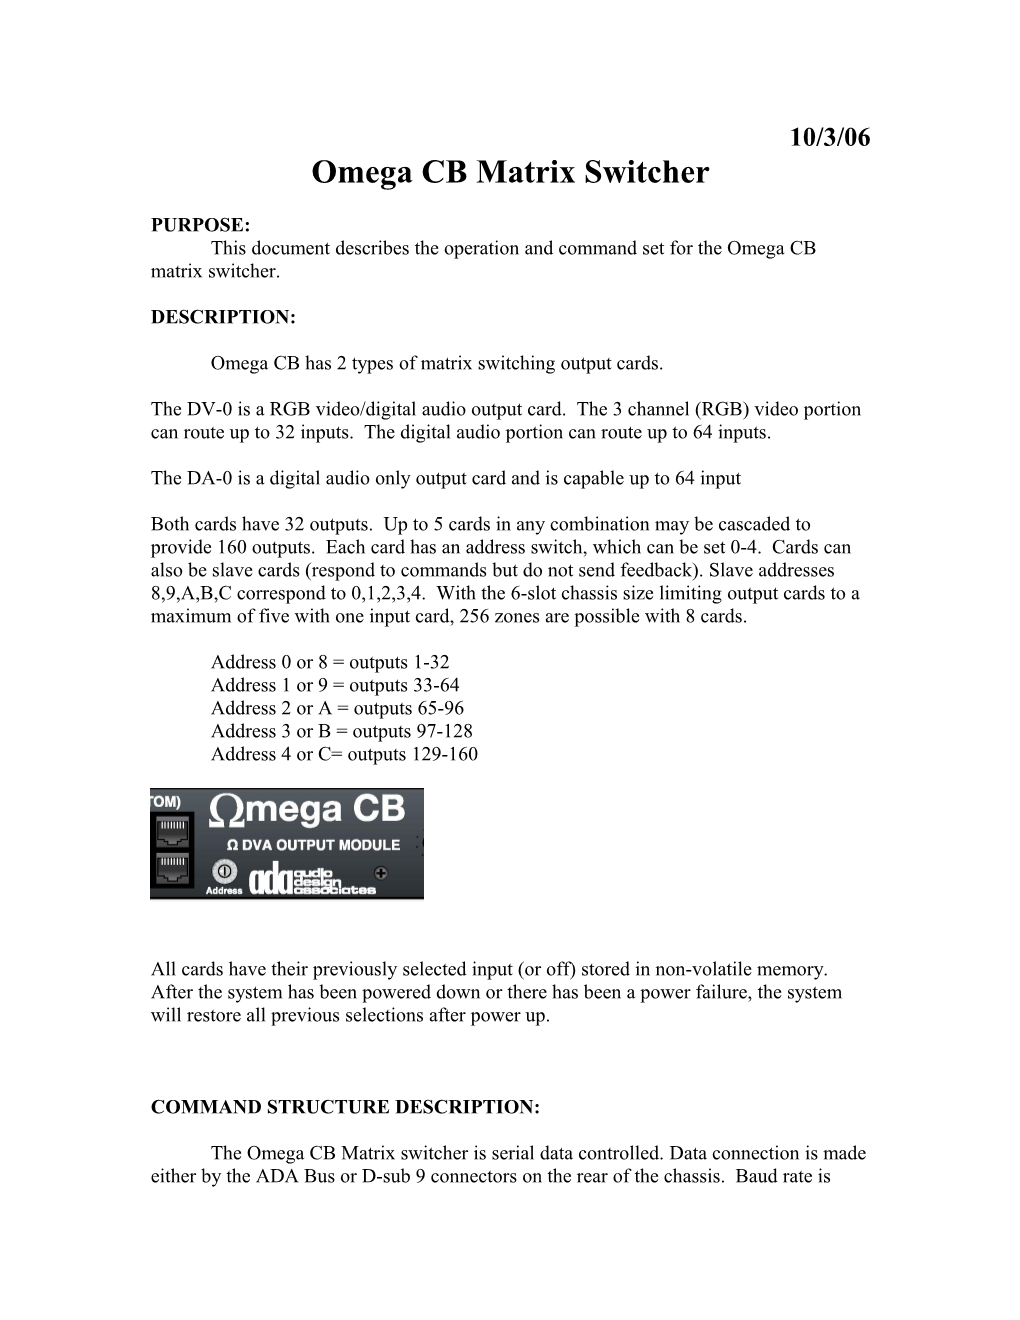 Omega CB Matrix Switcher